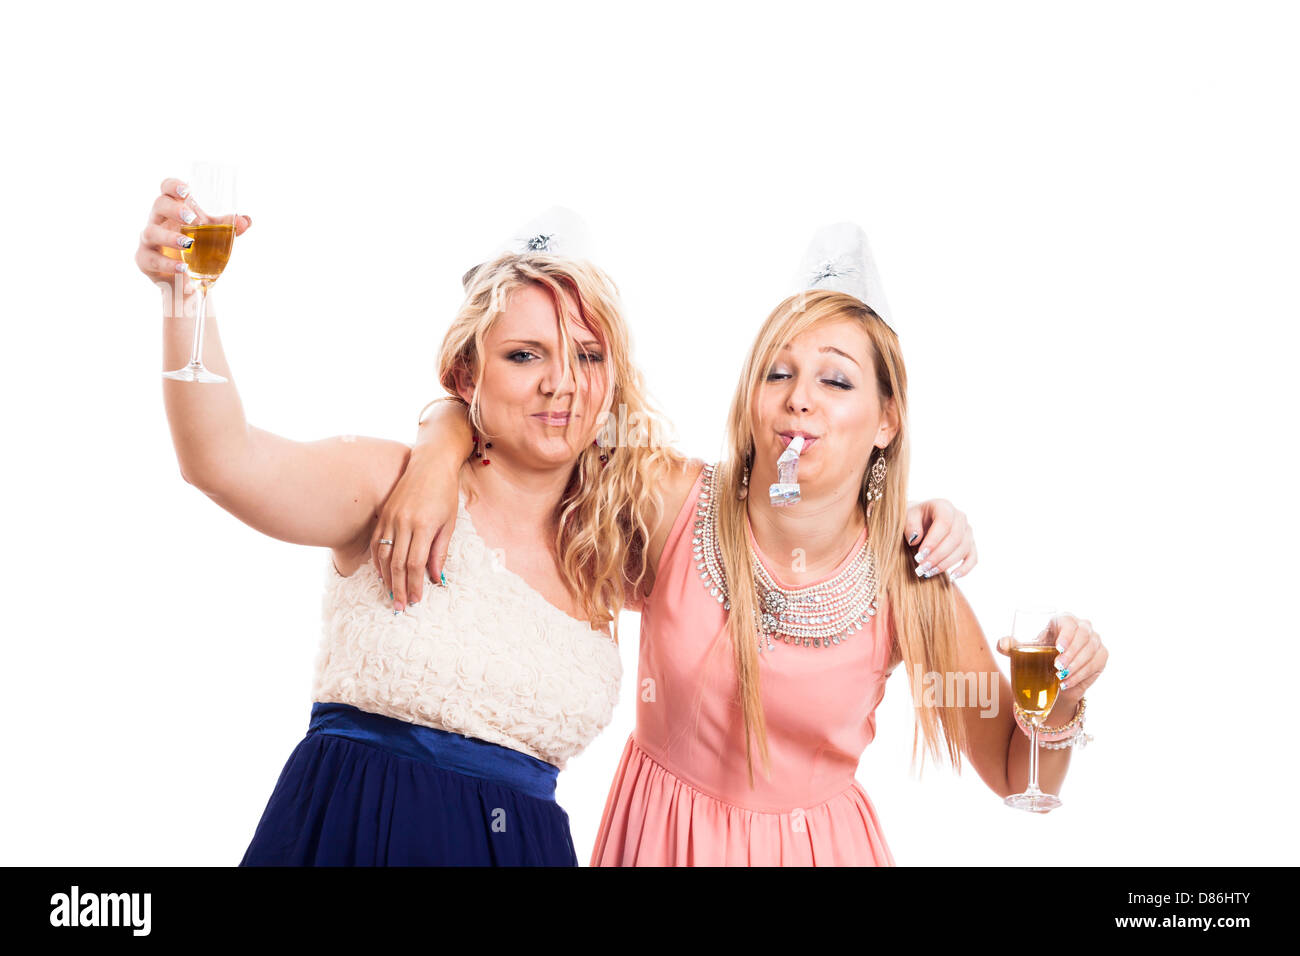 Zwei betrunkene Mädchen feiern mit Alkohol, isoliert auf weißem ...